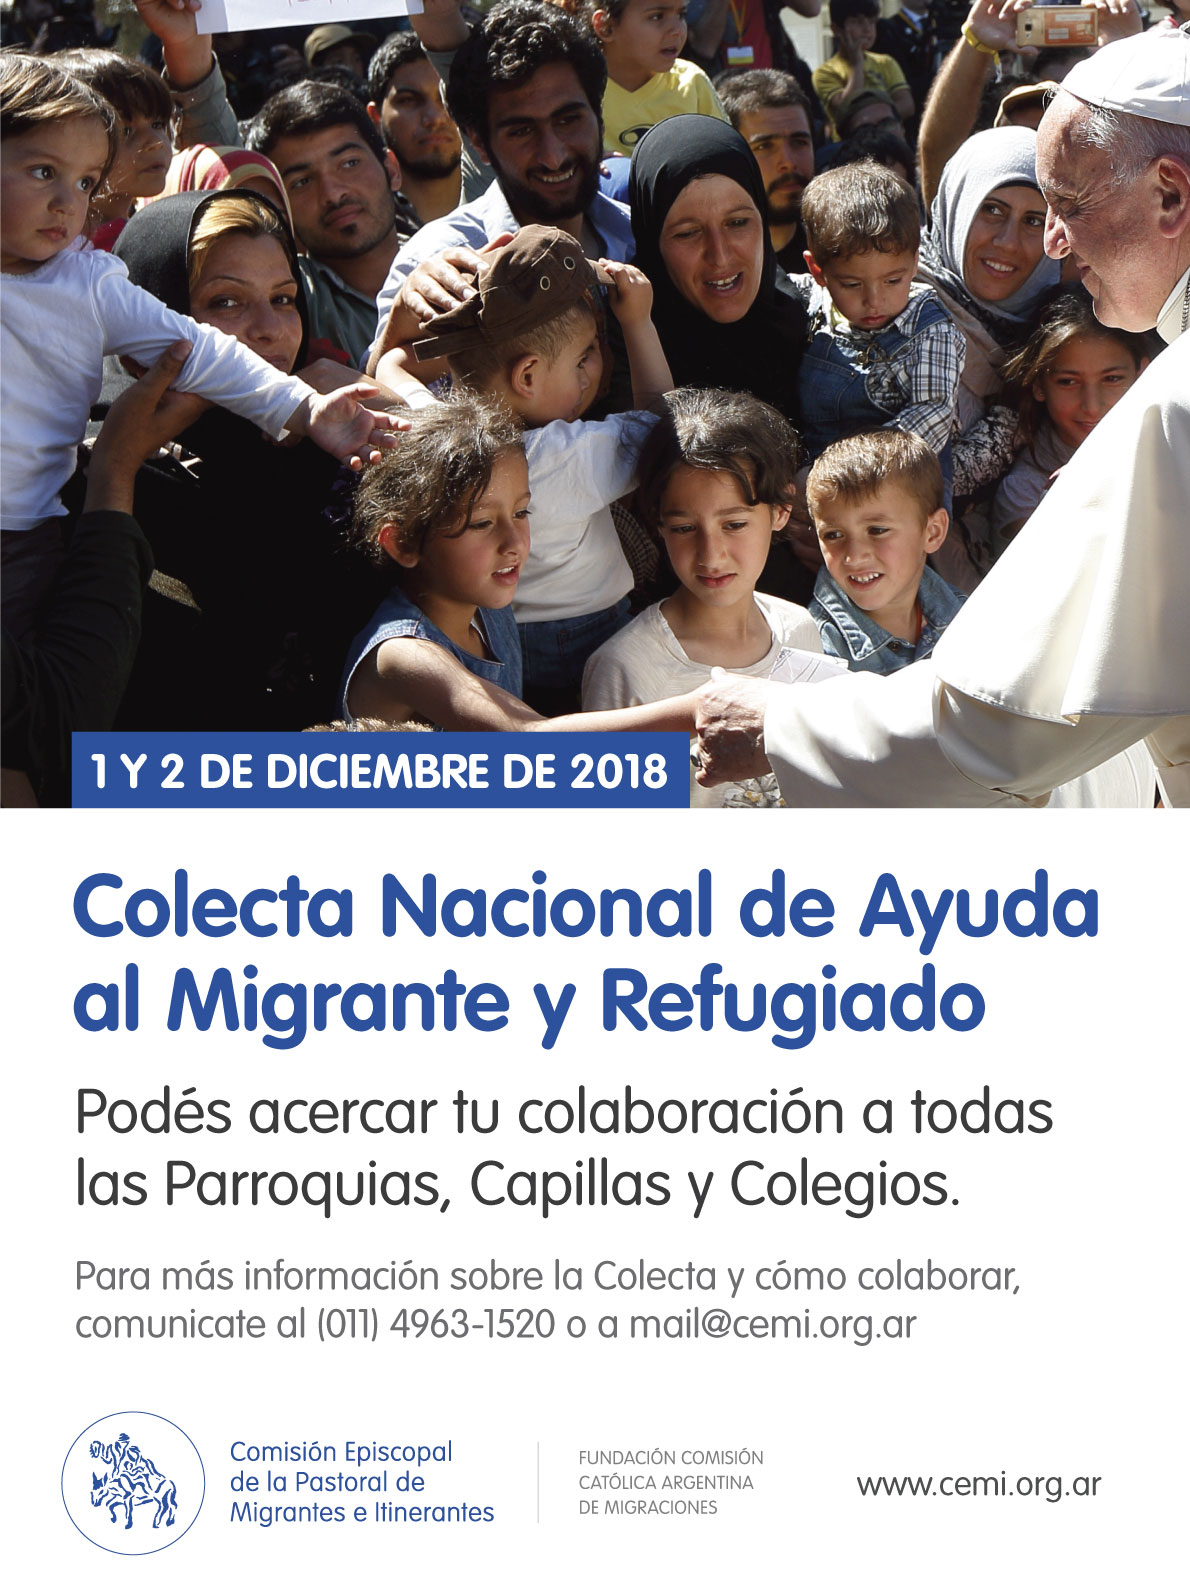 Comisión Episcopal de la Pastoral de Migrantes e Itinerantes